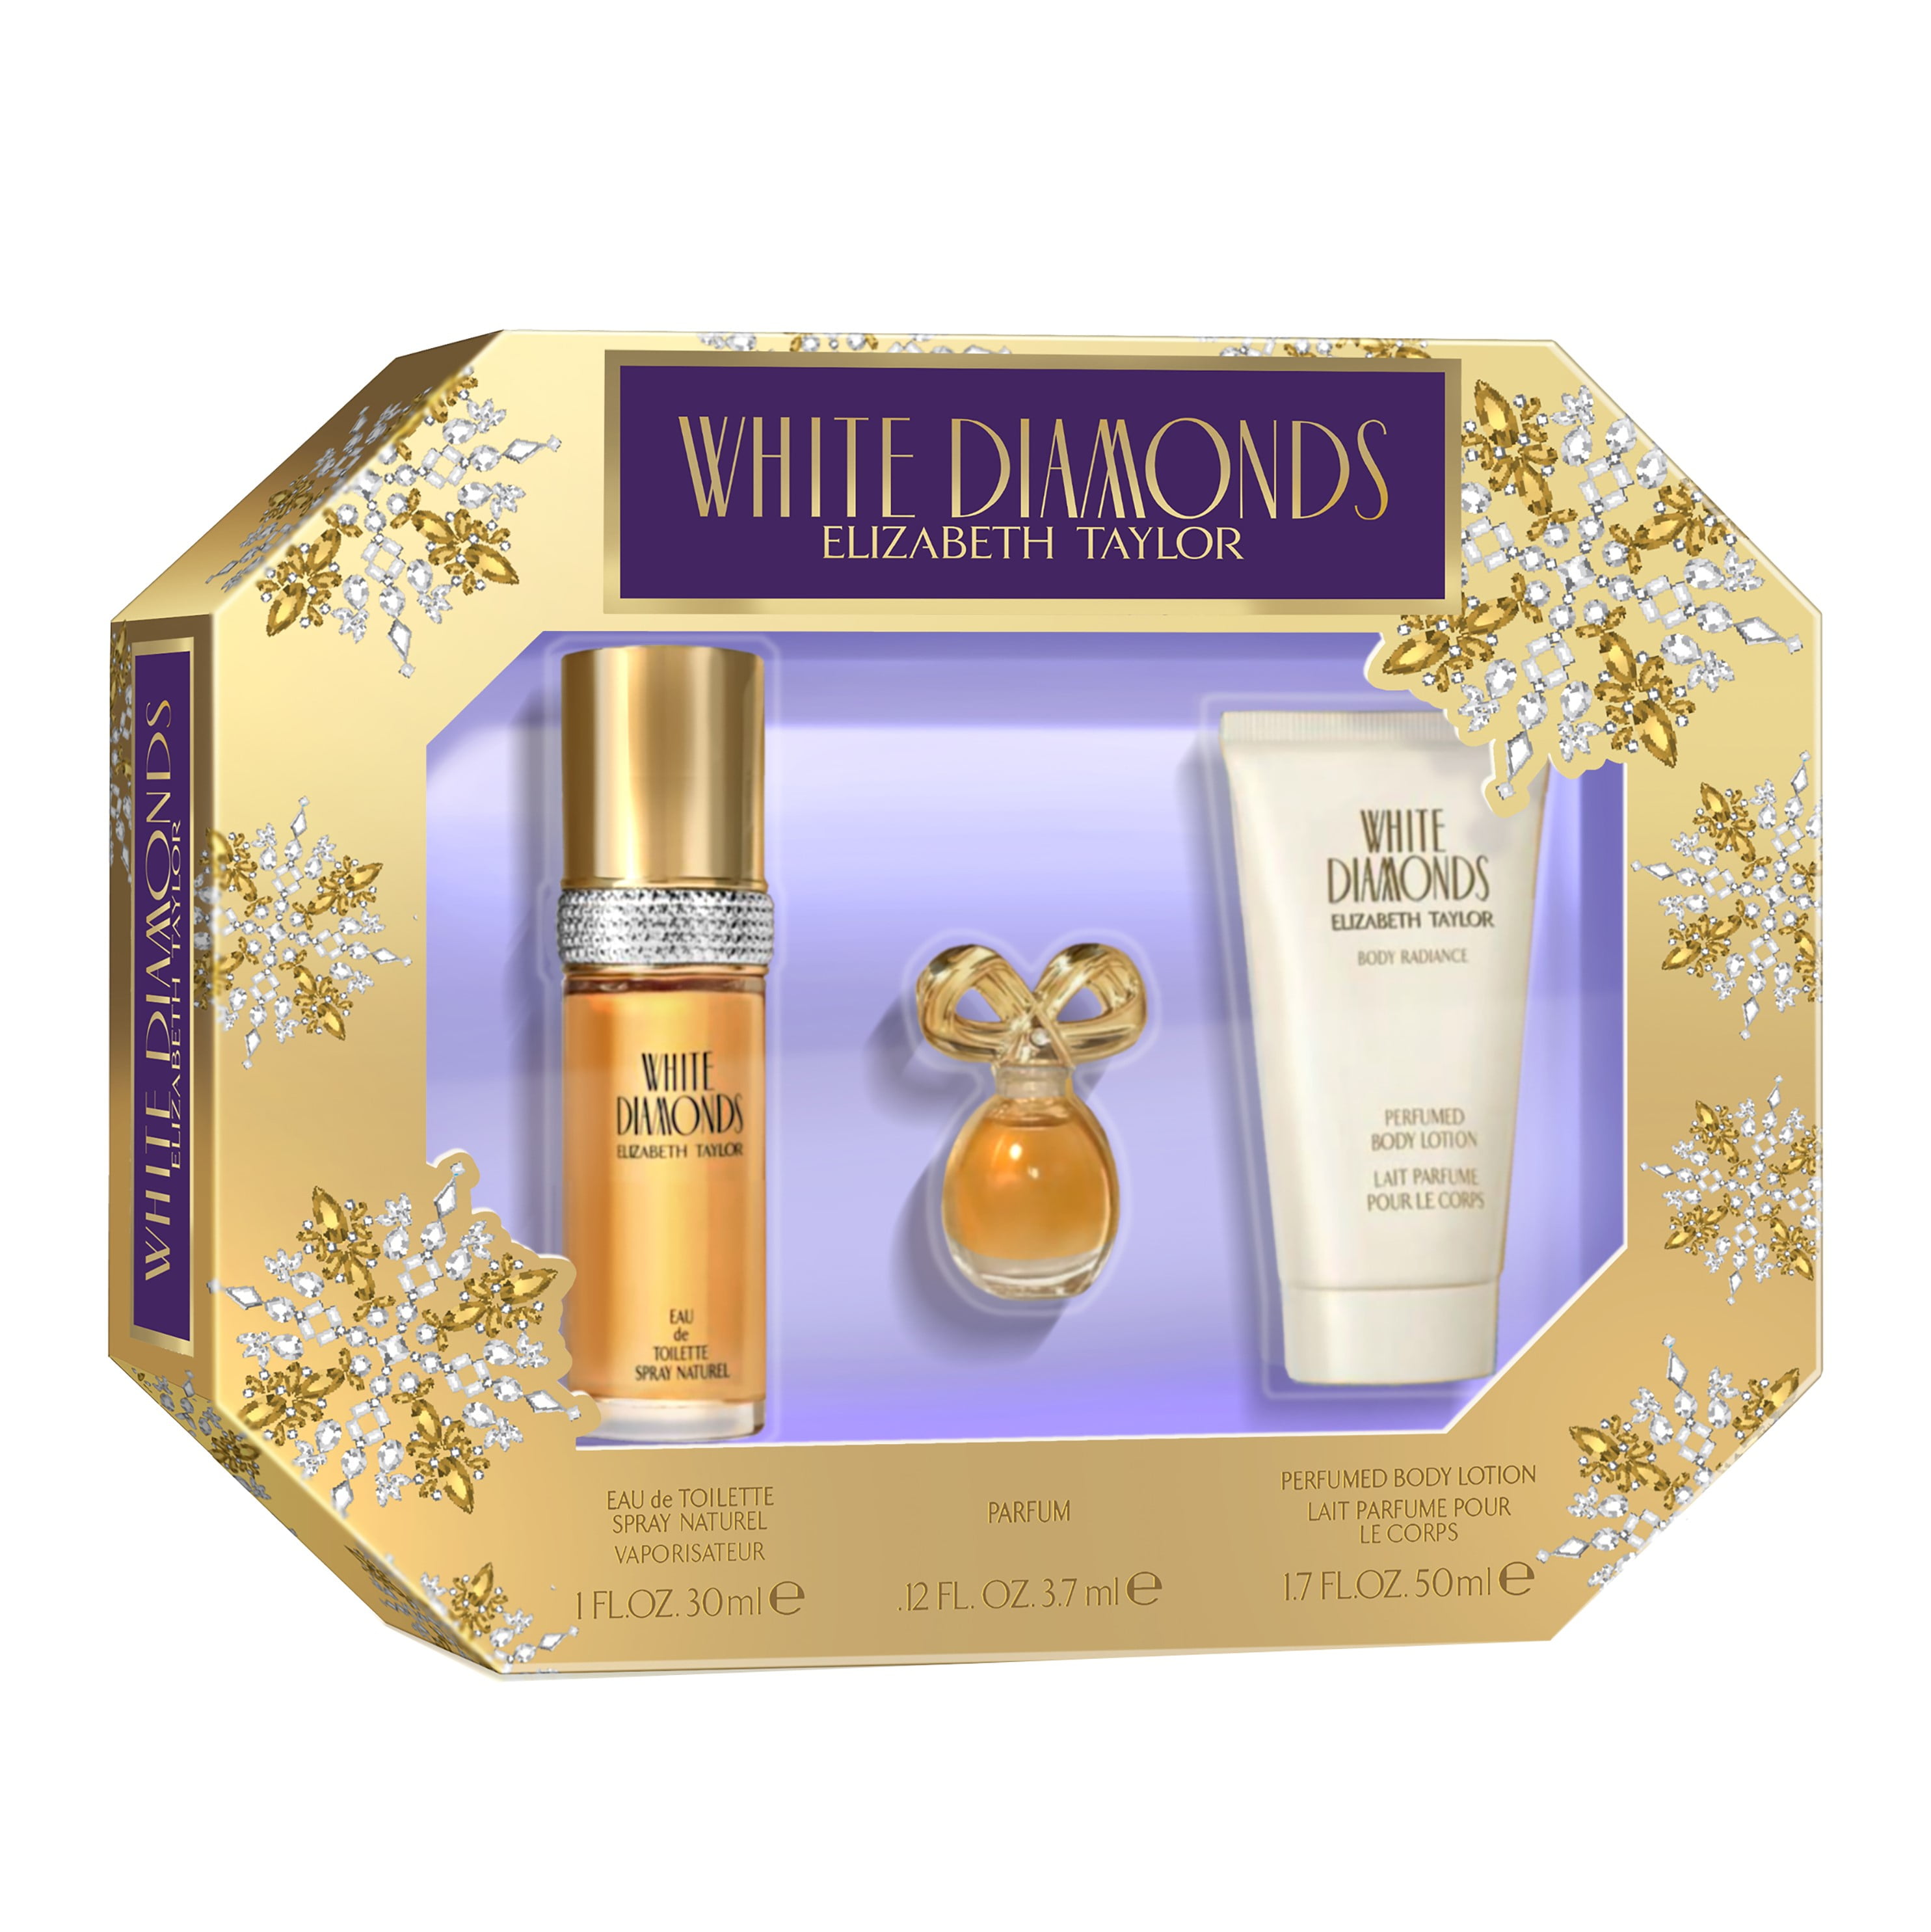 Elizabeth Taylor Perfume White Diamonds Outlet Cheap, Save 58% | jlcatj ...